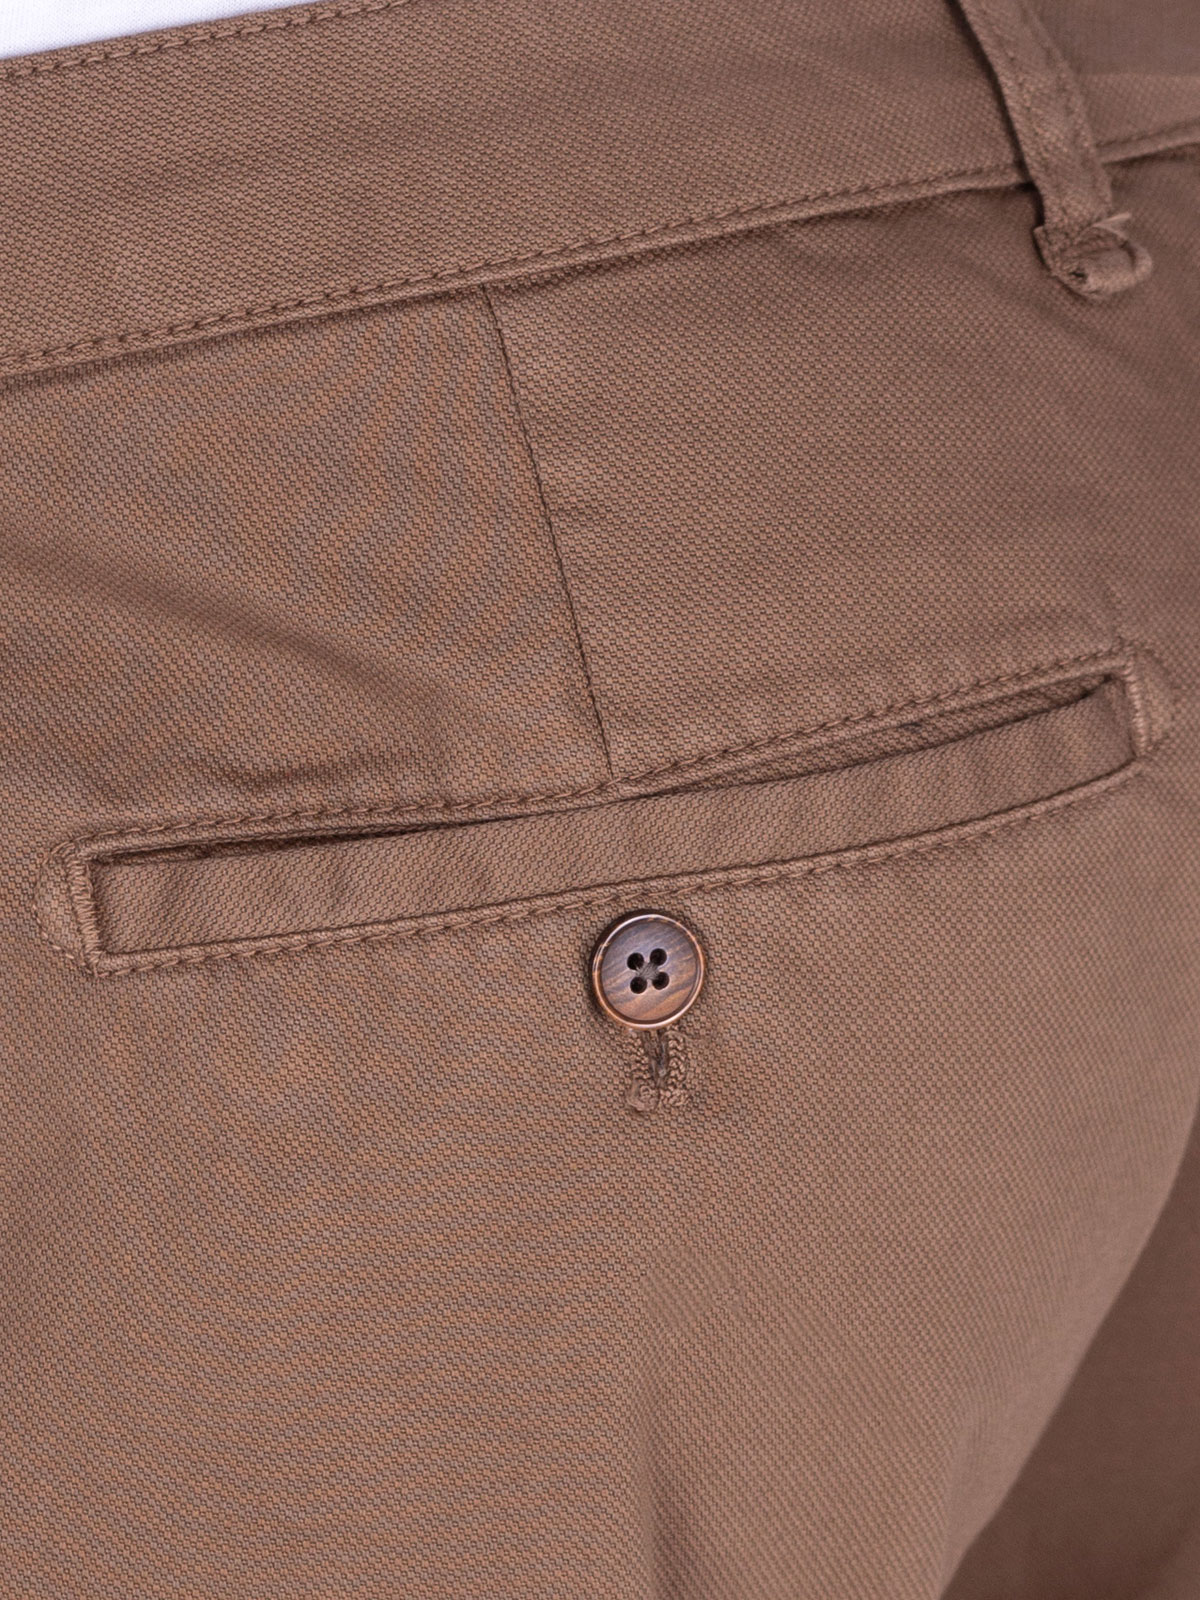 Pantaloni cropți în culoarea cămilului - 60279 € 49.49 img4